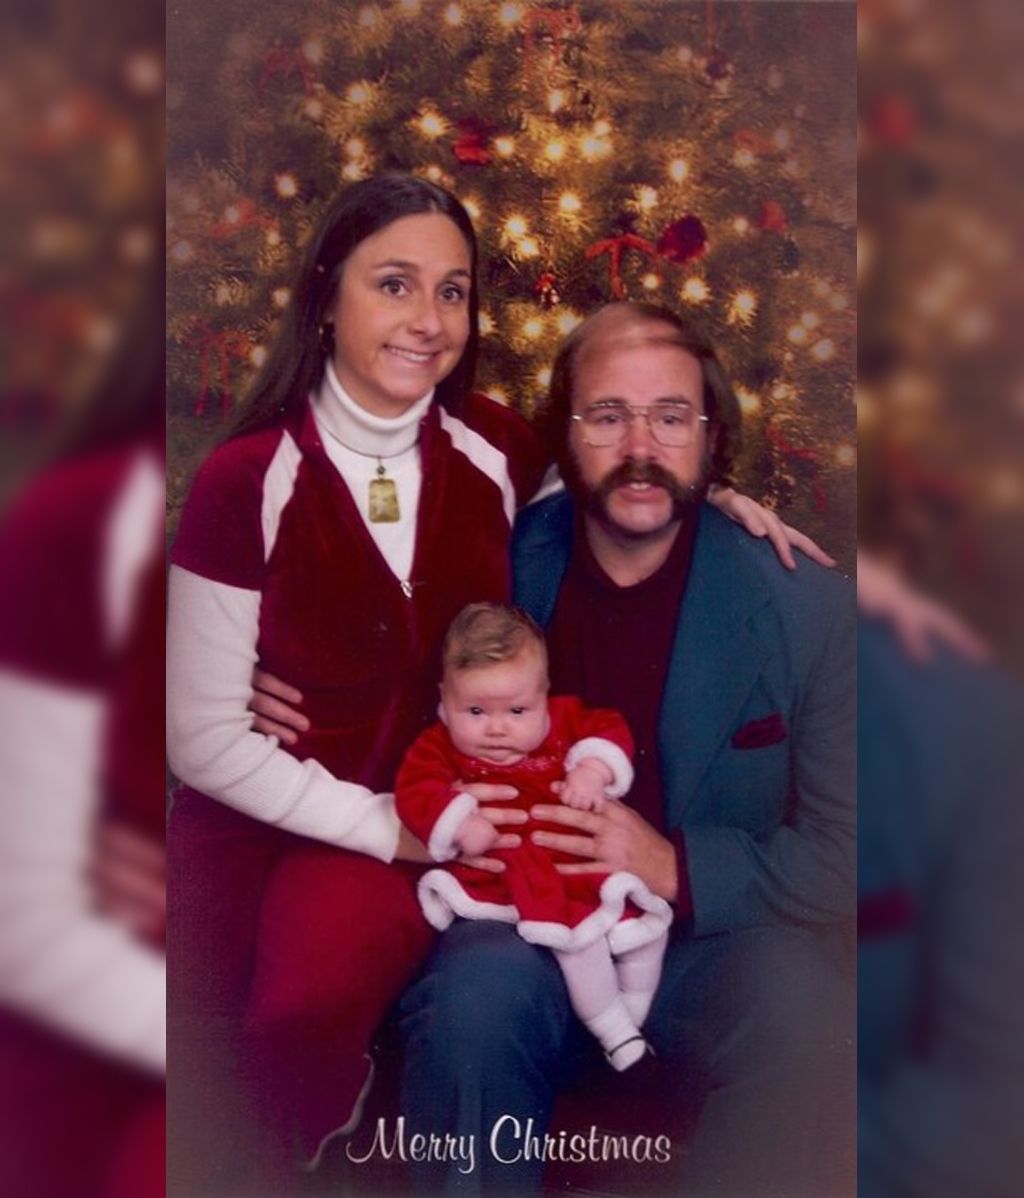 Esta familia felicita la Navidad con mucho humor